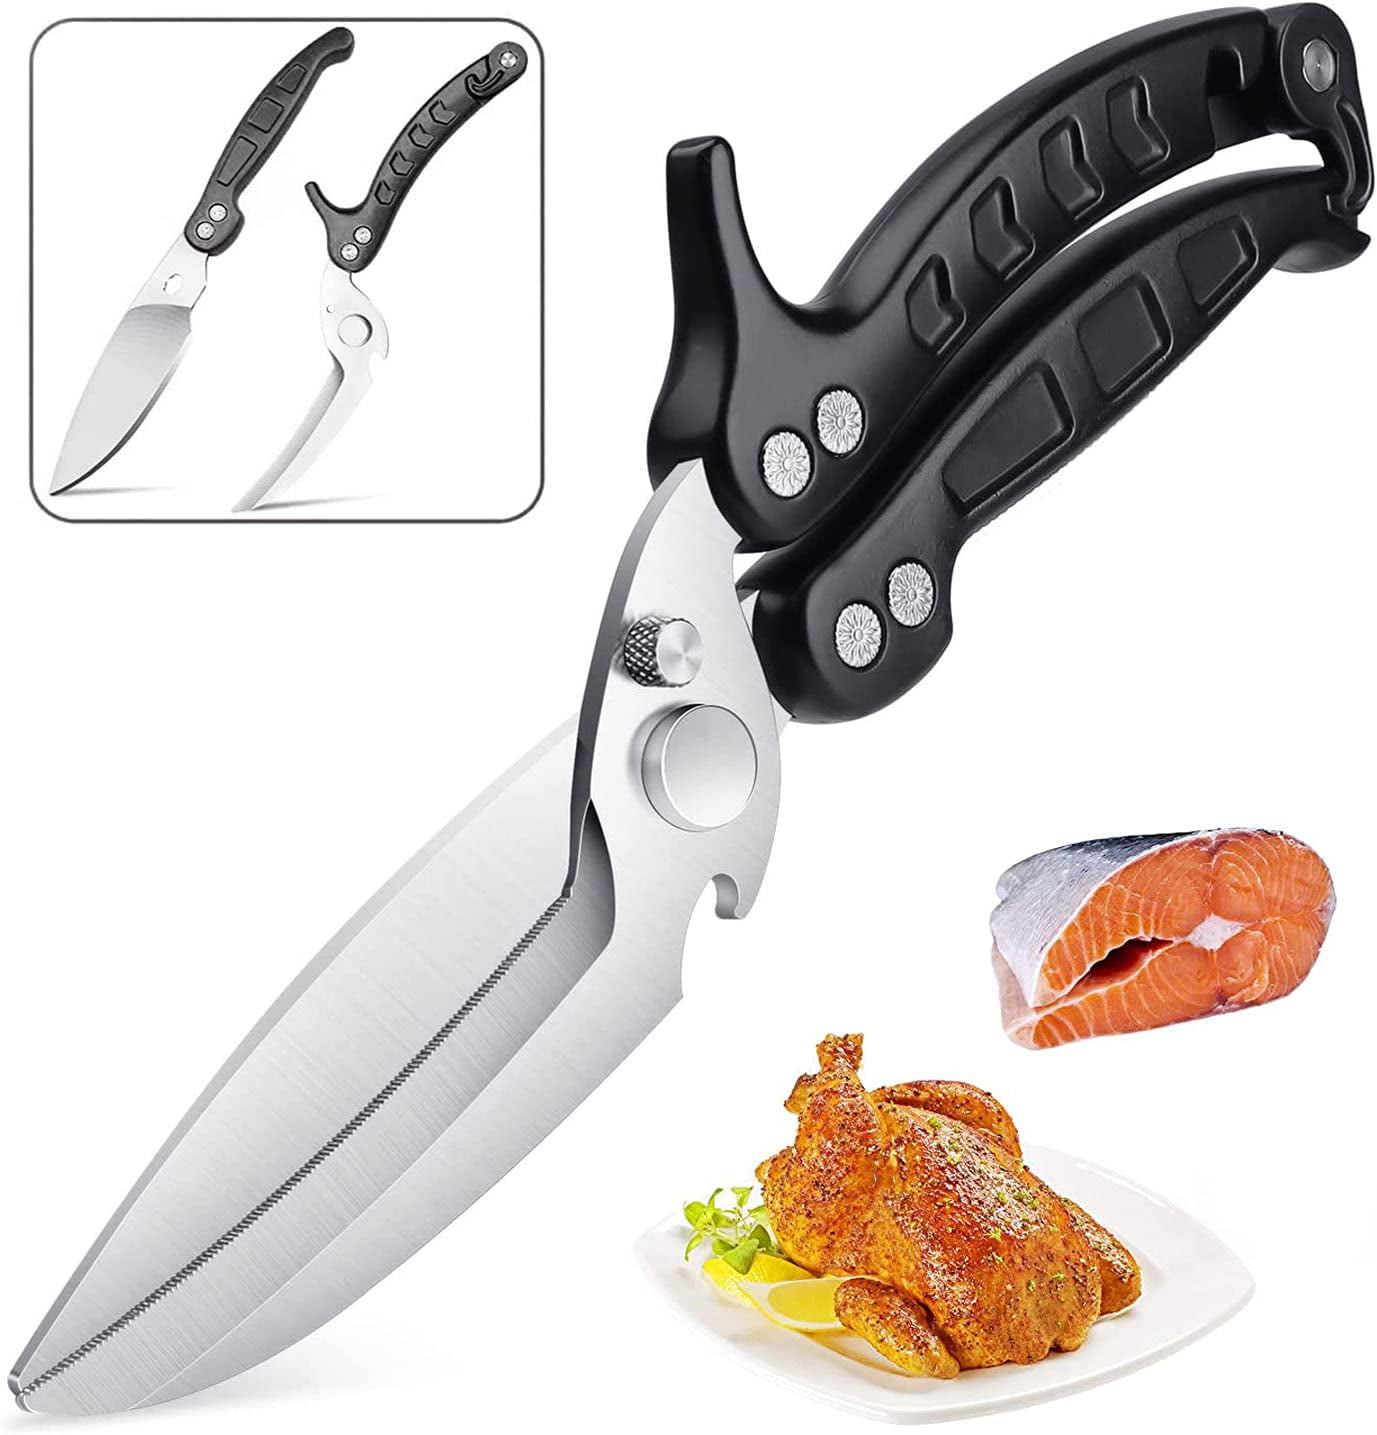 Muerk Kitchen Shears, Kitchen Scissors Heavy Duty Seafood Scissors